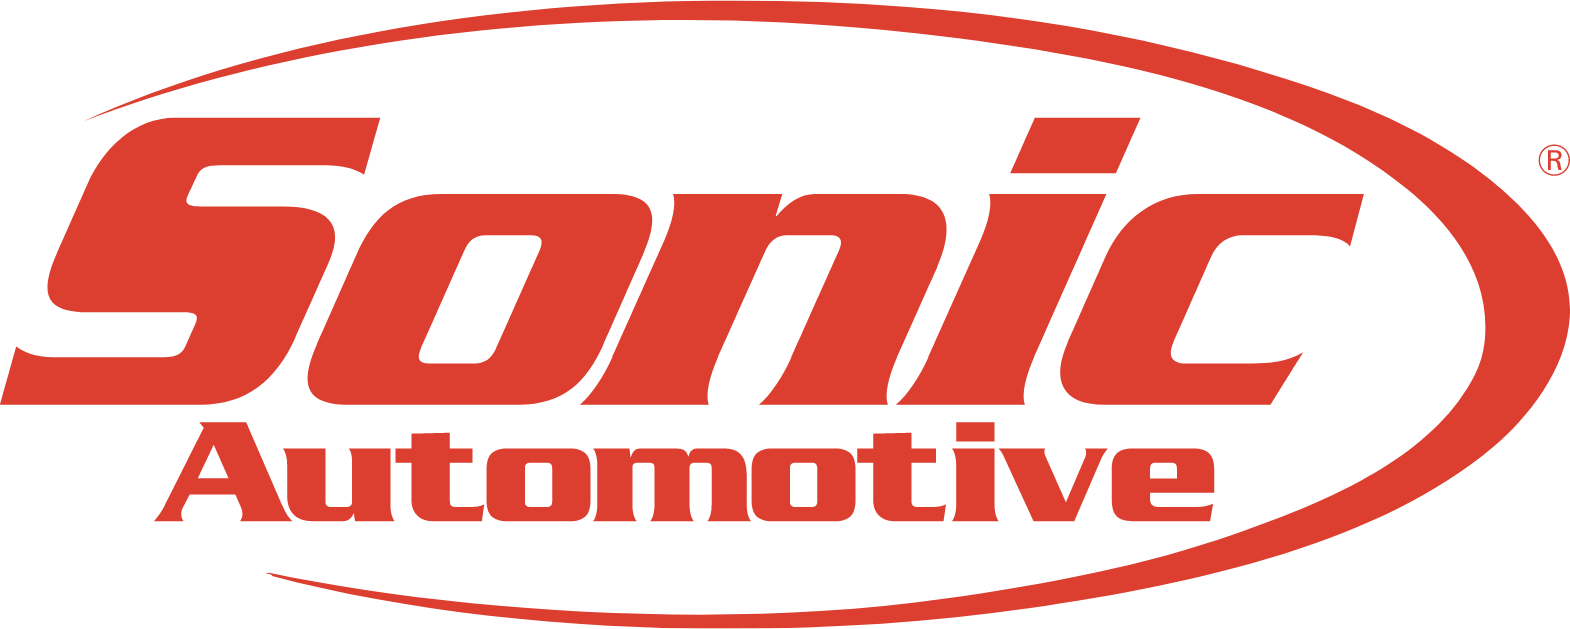 Sonic Automotive
 logo (PNG transparent)